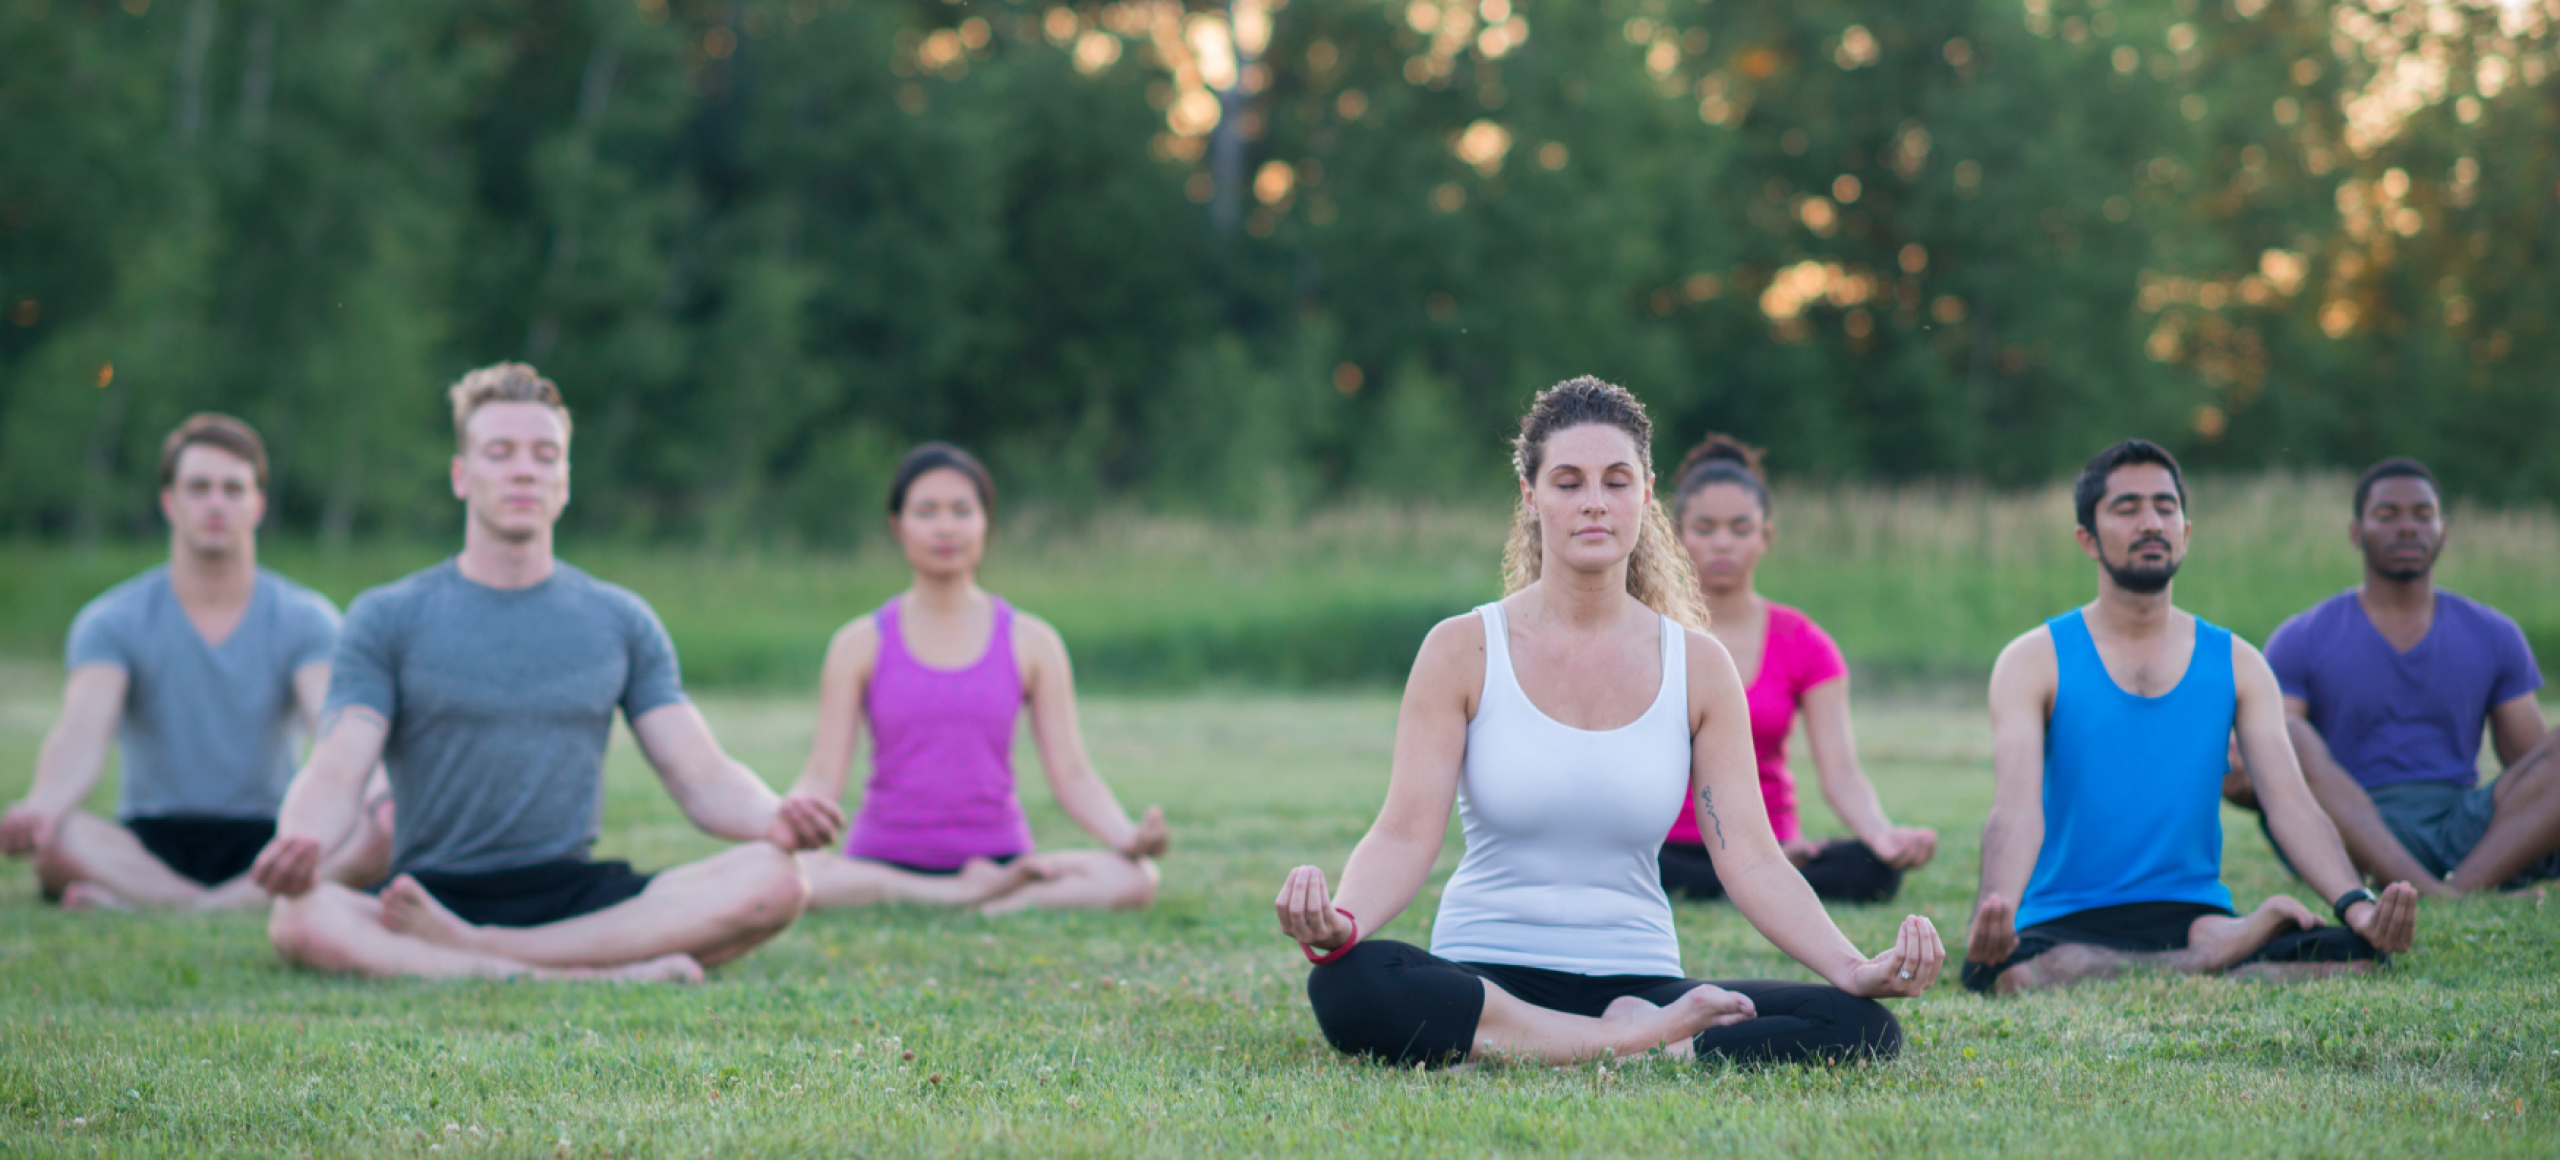 Yoga für die aktive Tagungspause